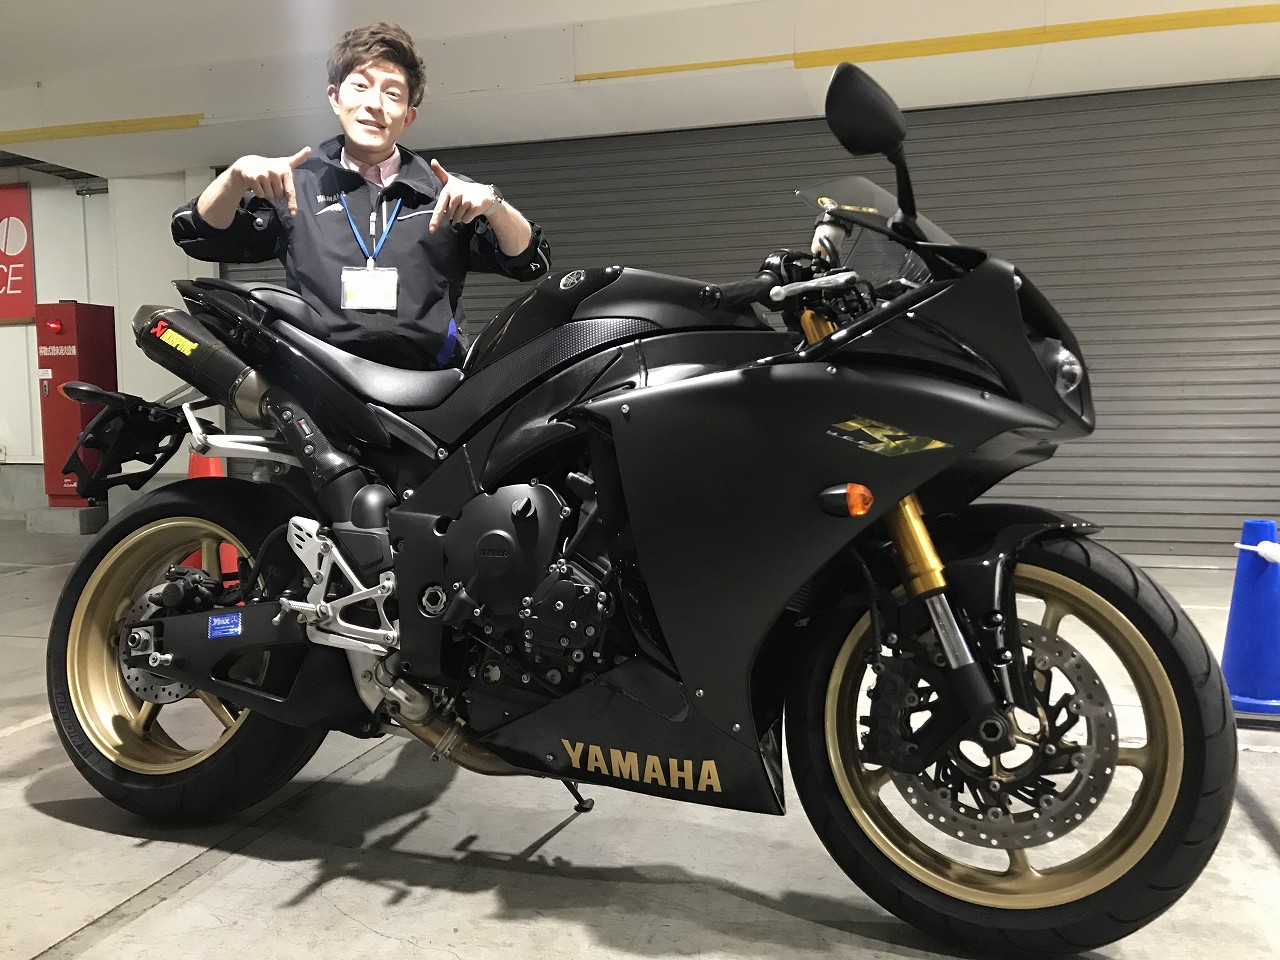 Yzf R1 特選中古 極上車入荷しました 最新情報 U Media ユーメディア 中古 バイク 新車バイク探しの決定版 神奈川 東京でバイク探すならユーメディア